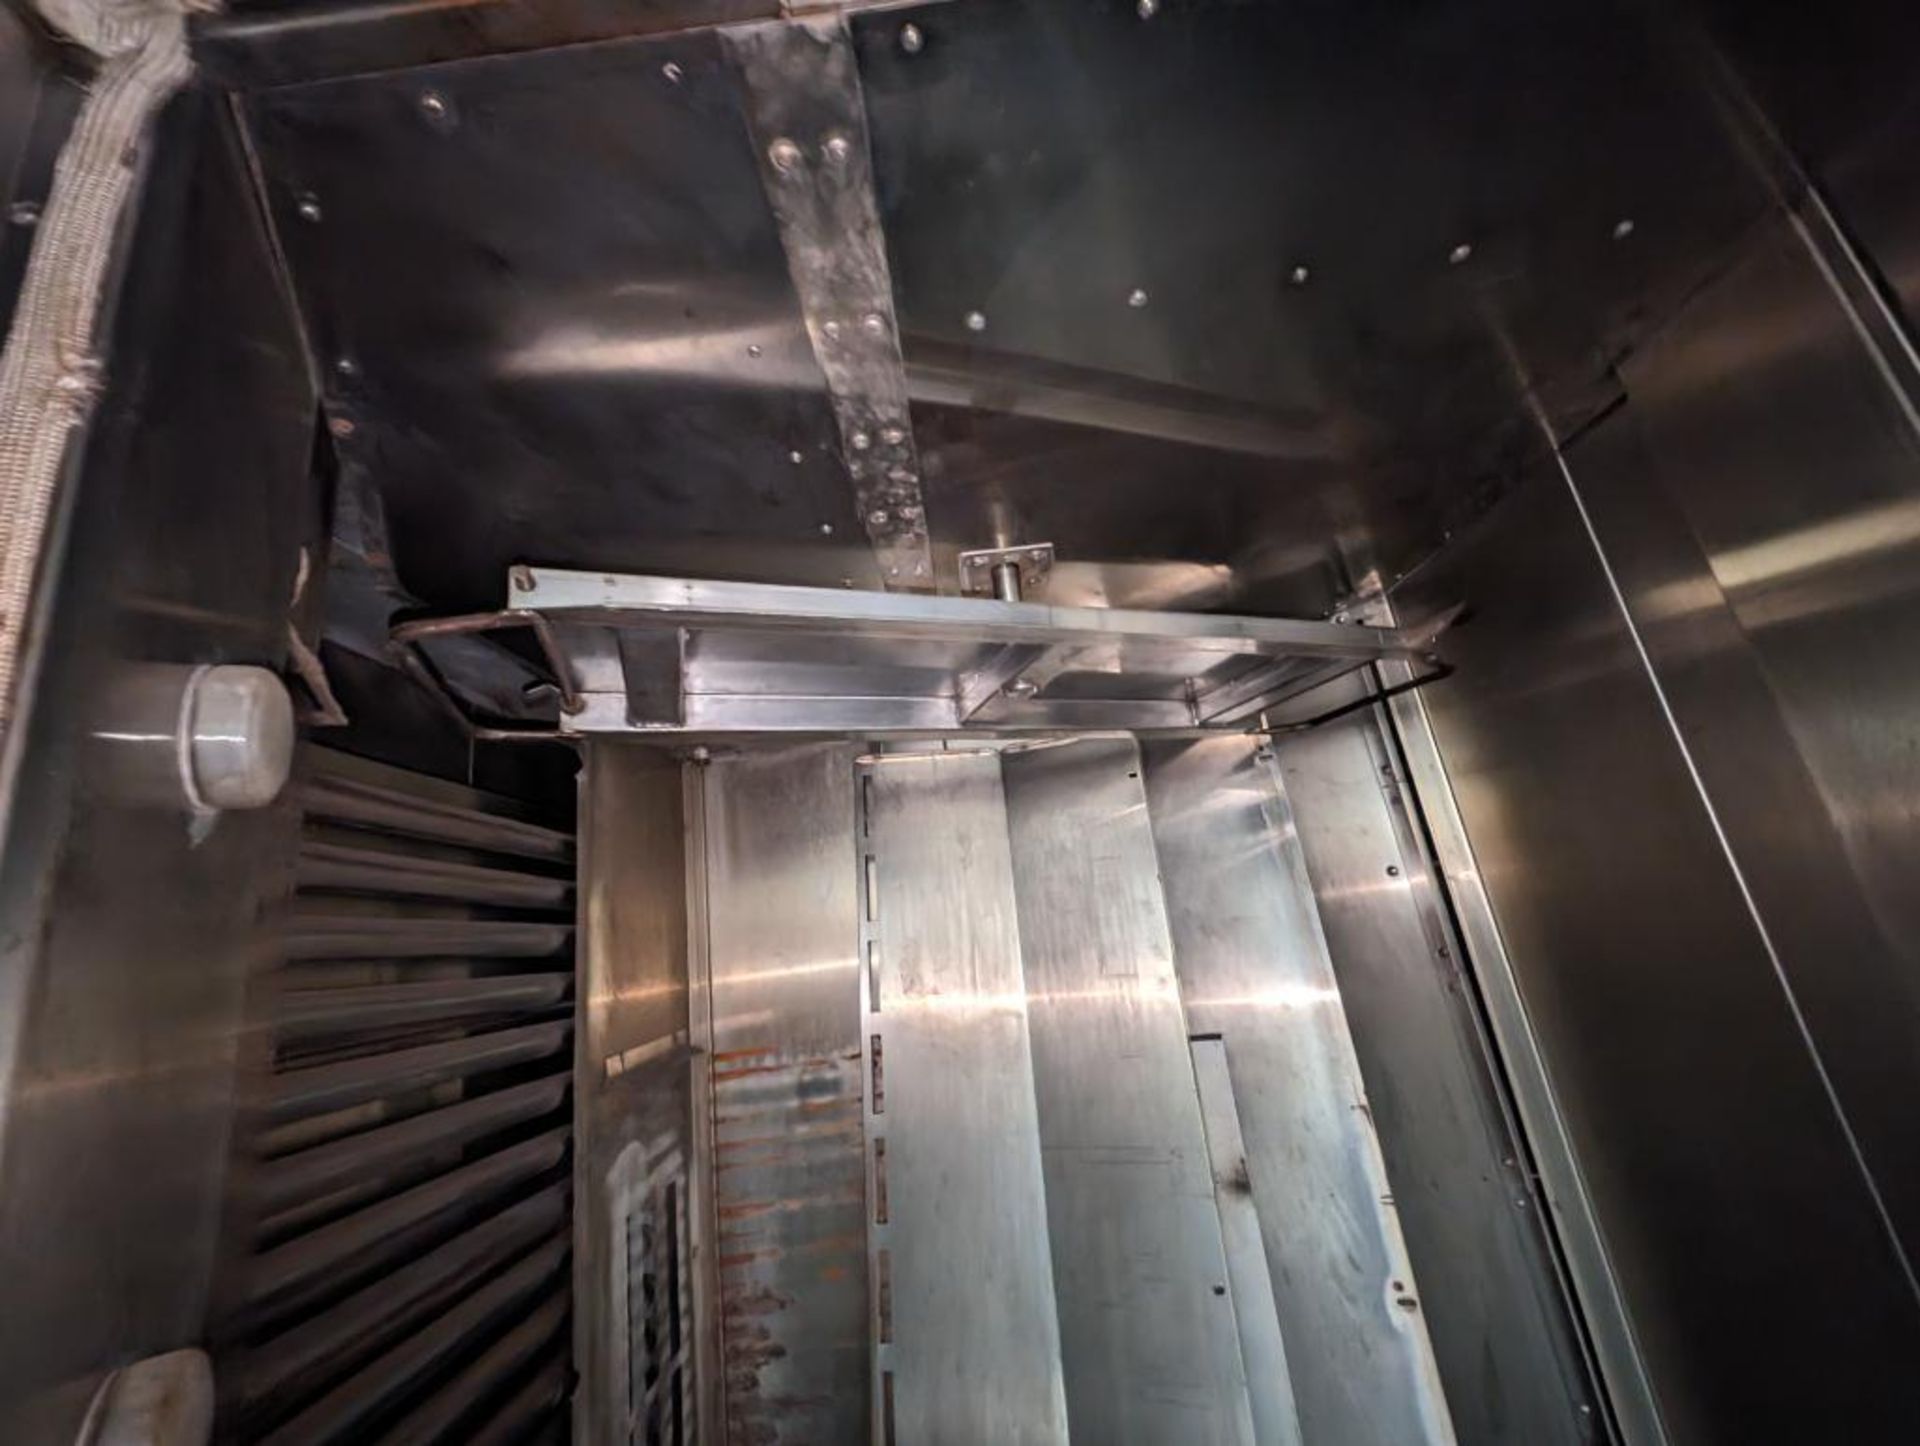 Hobart double rack oven - Image 4 of 10